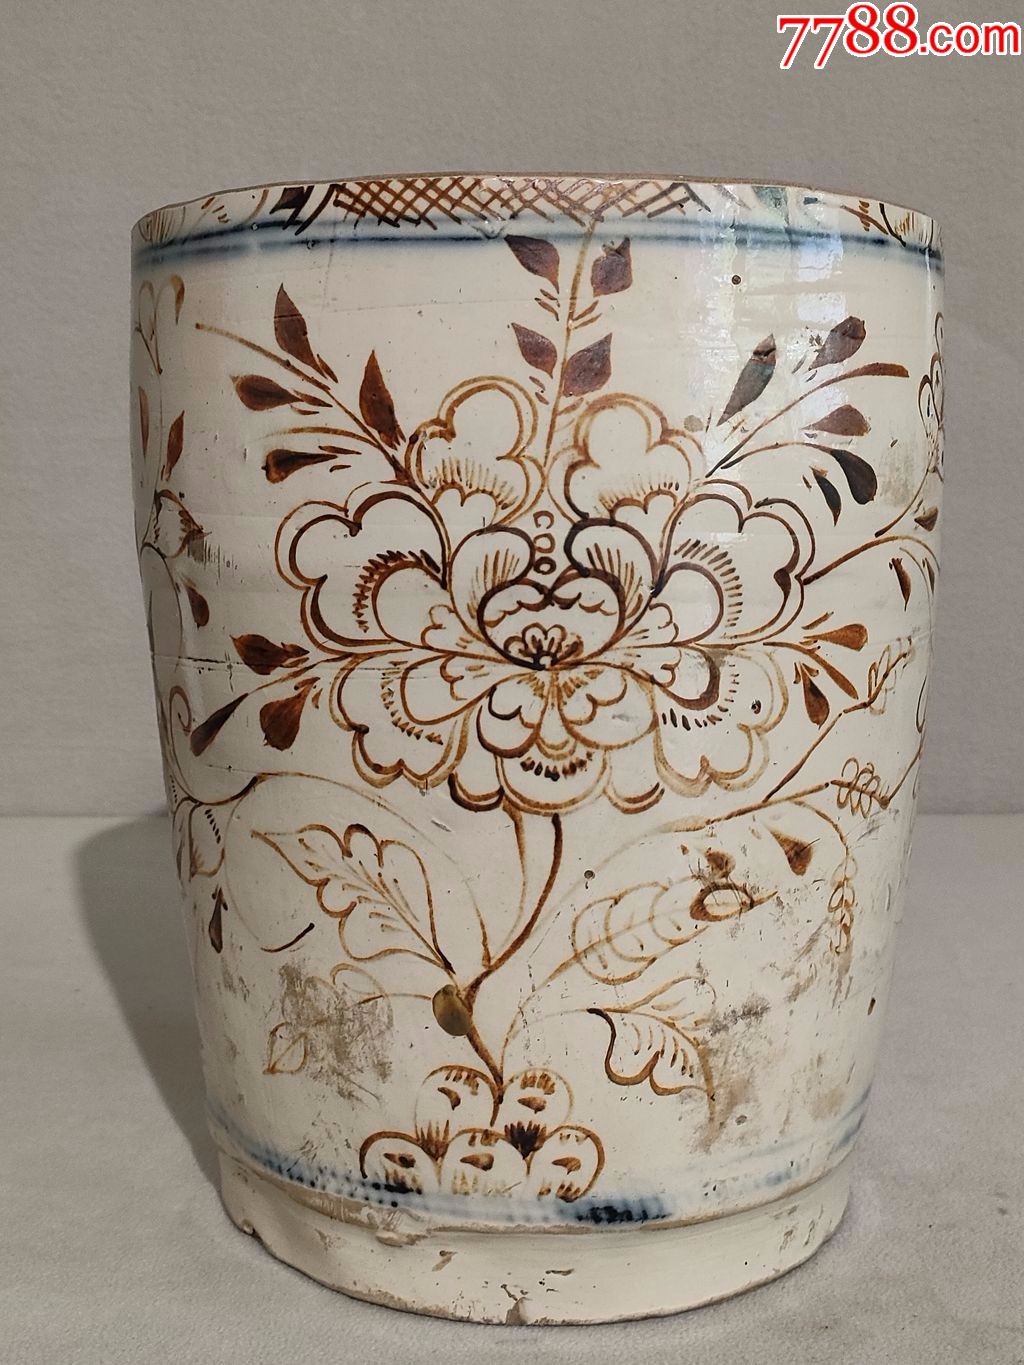 清早期磁州窑瓷器图片